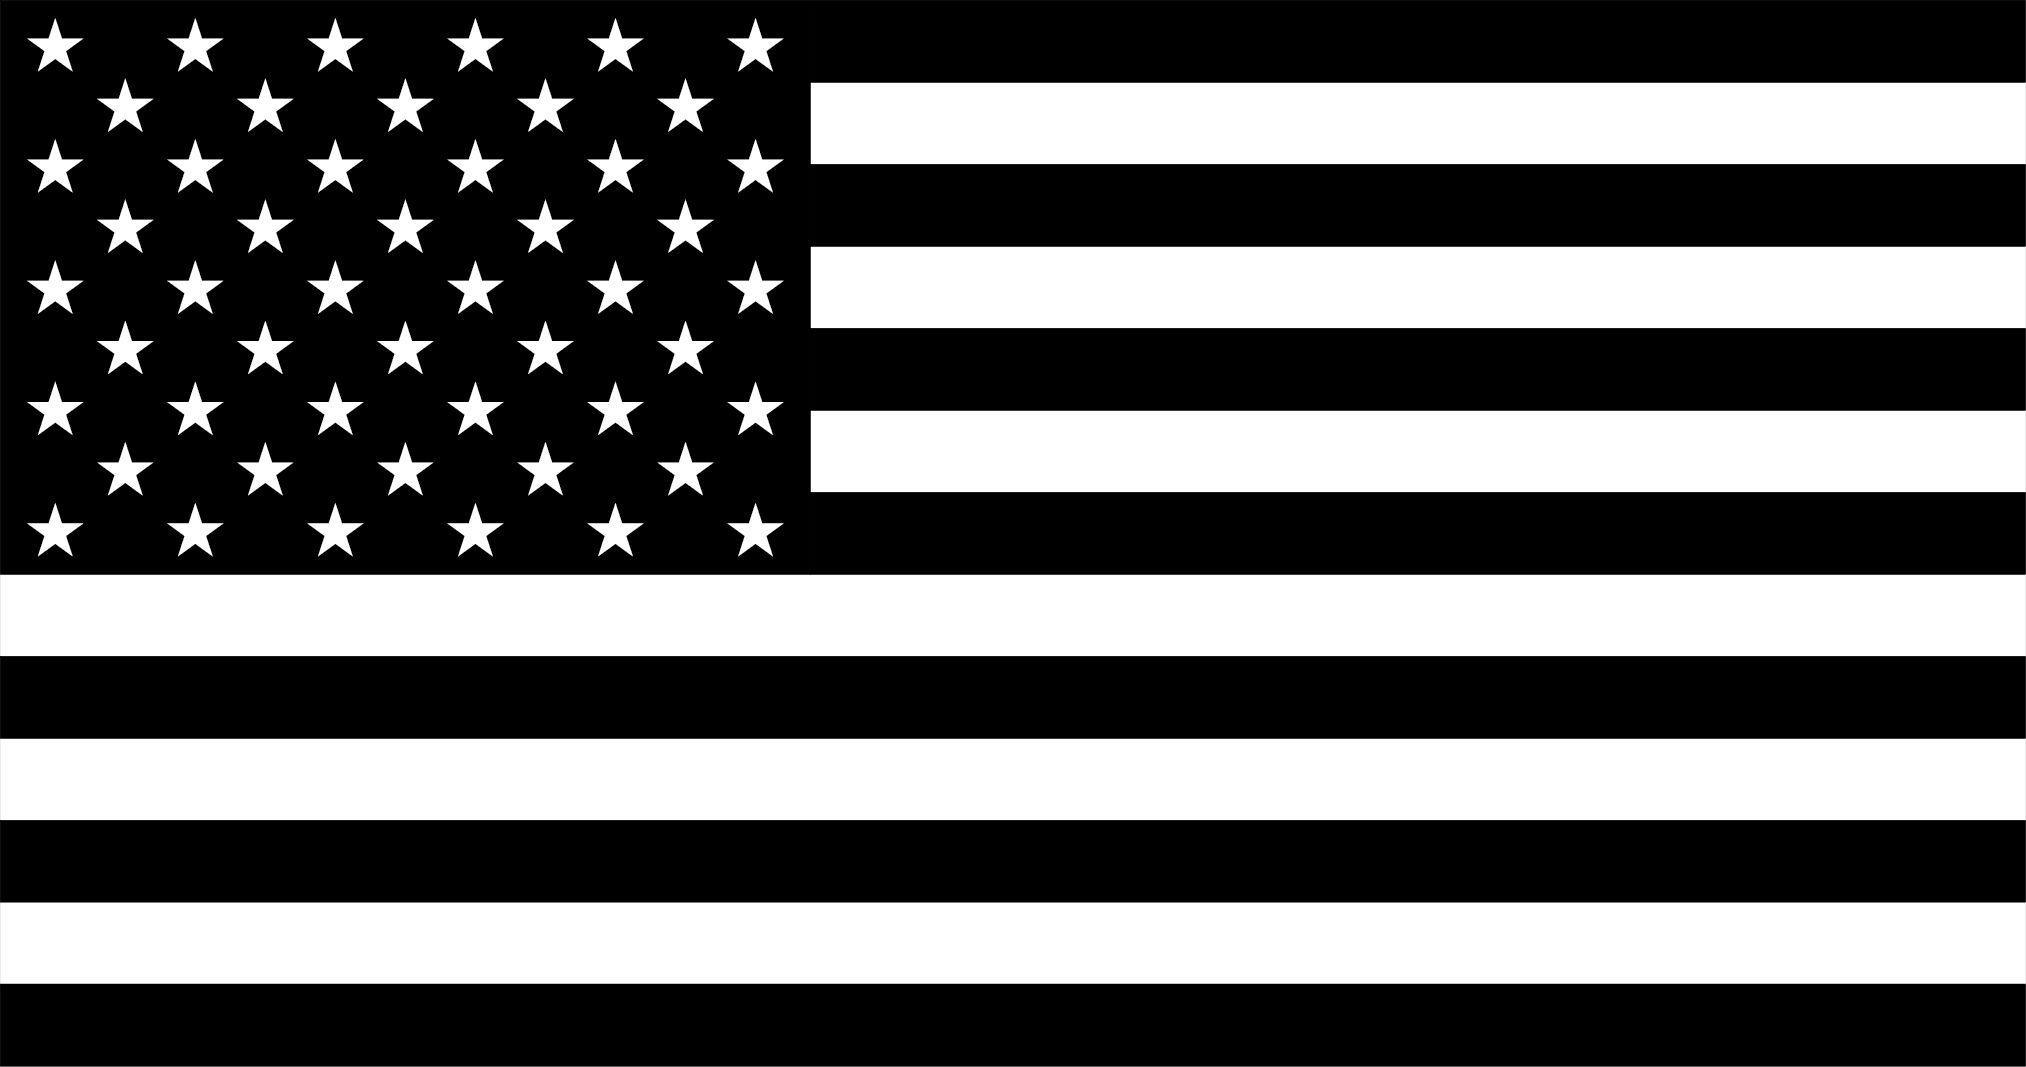 19 Dark American Flag iPhone Wallpapers  WallpaperSafari